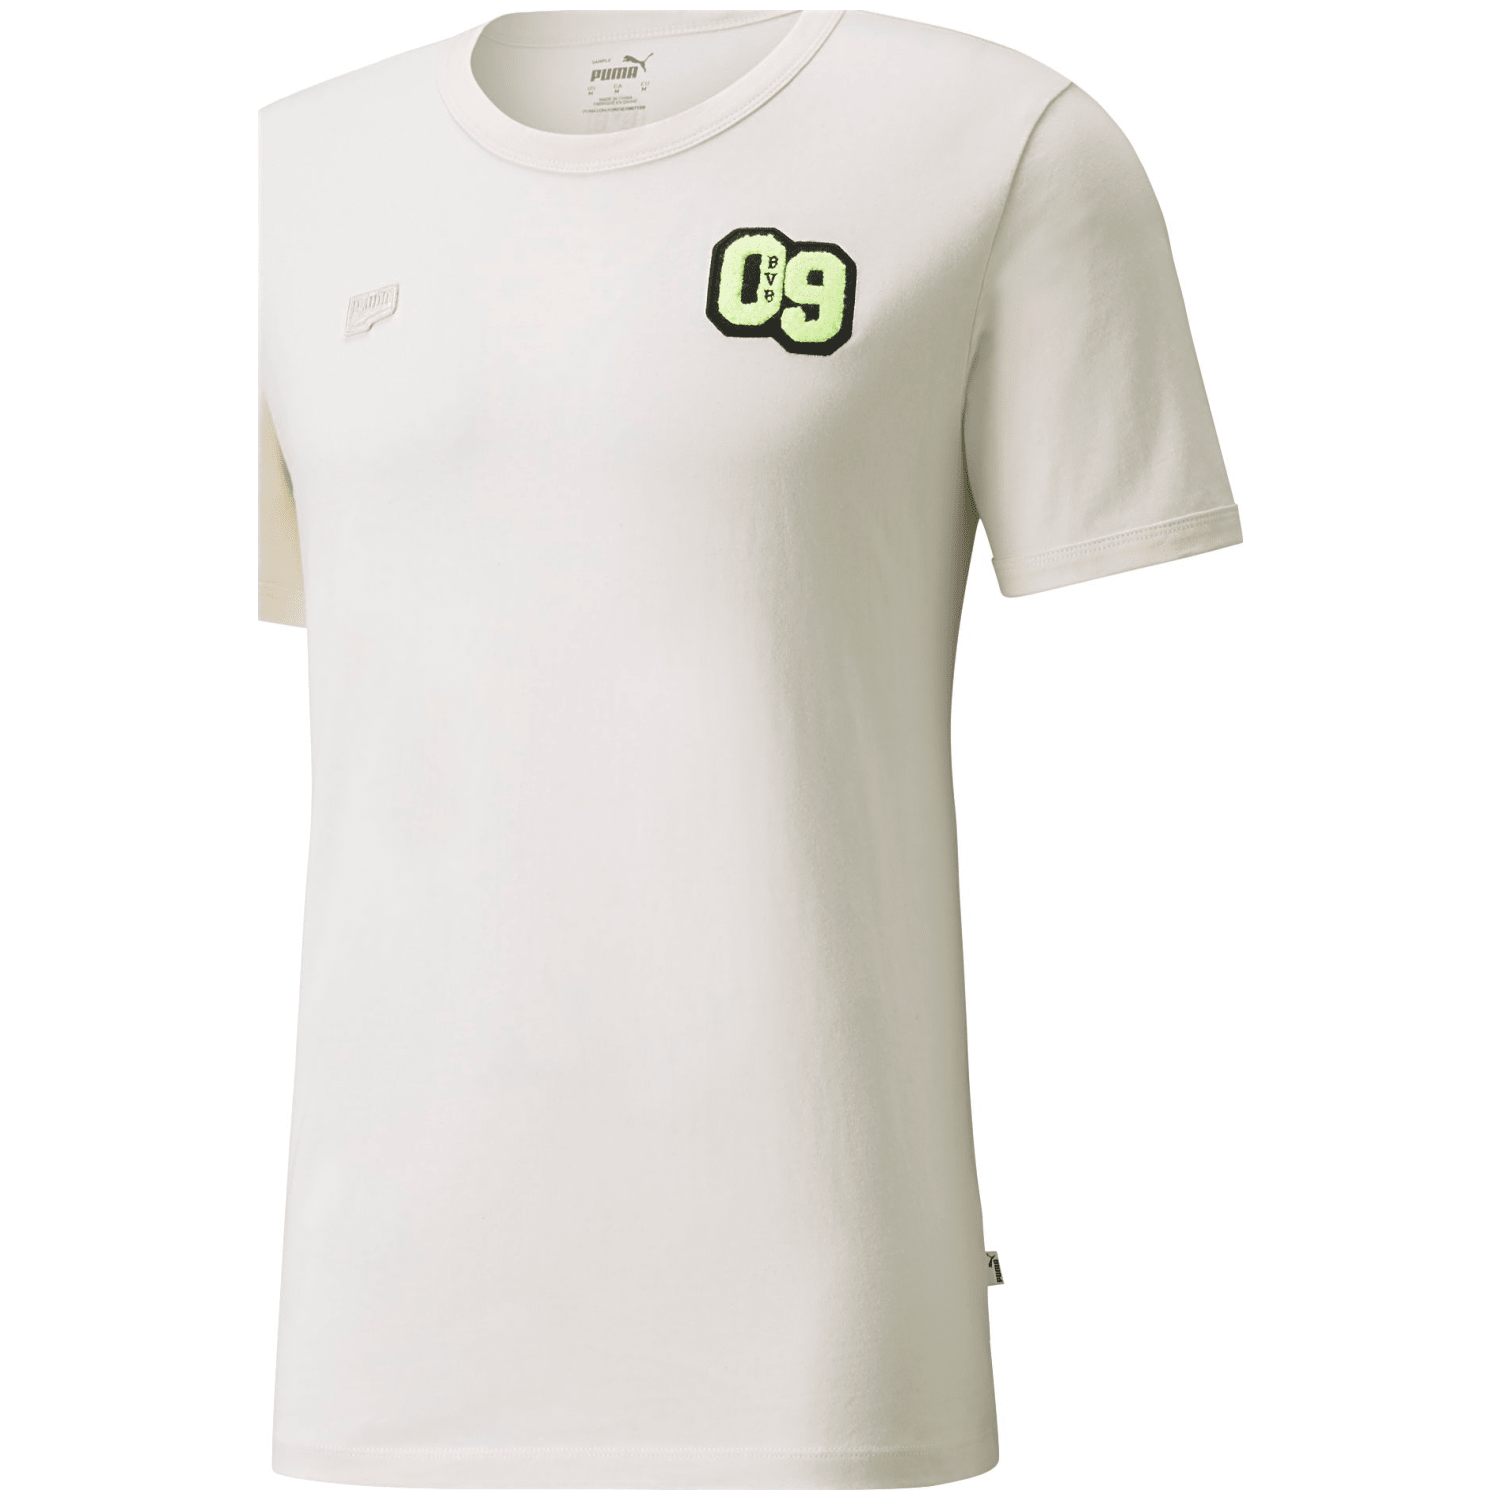 Puma BVB FtblFeat Tee Herren T-Shirt